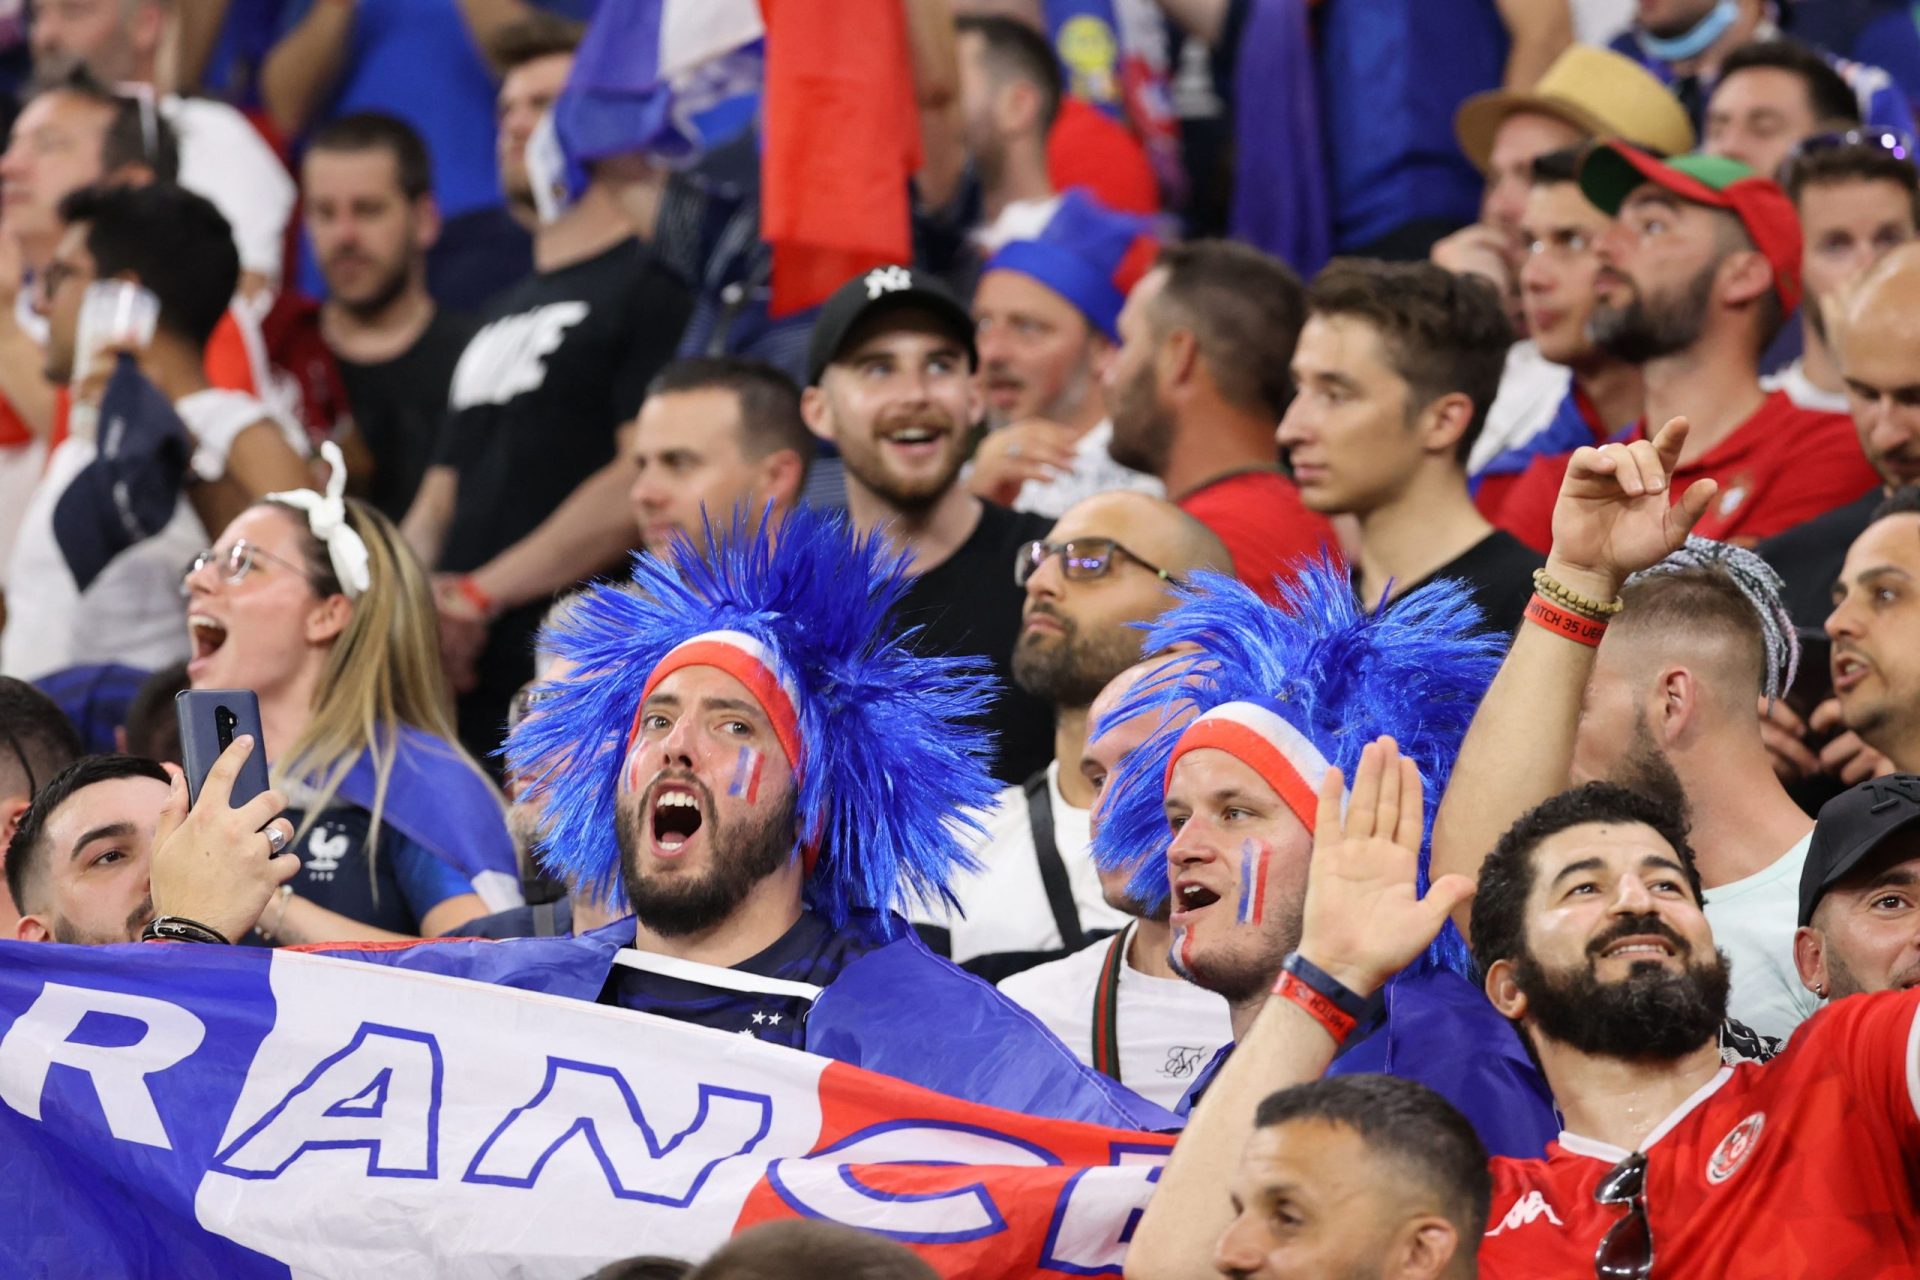 Seis franceses foram ver o jogo Hungria–França em… Bucareste em vez de Budapeste